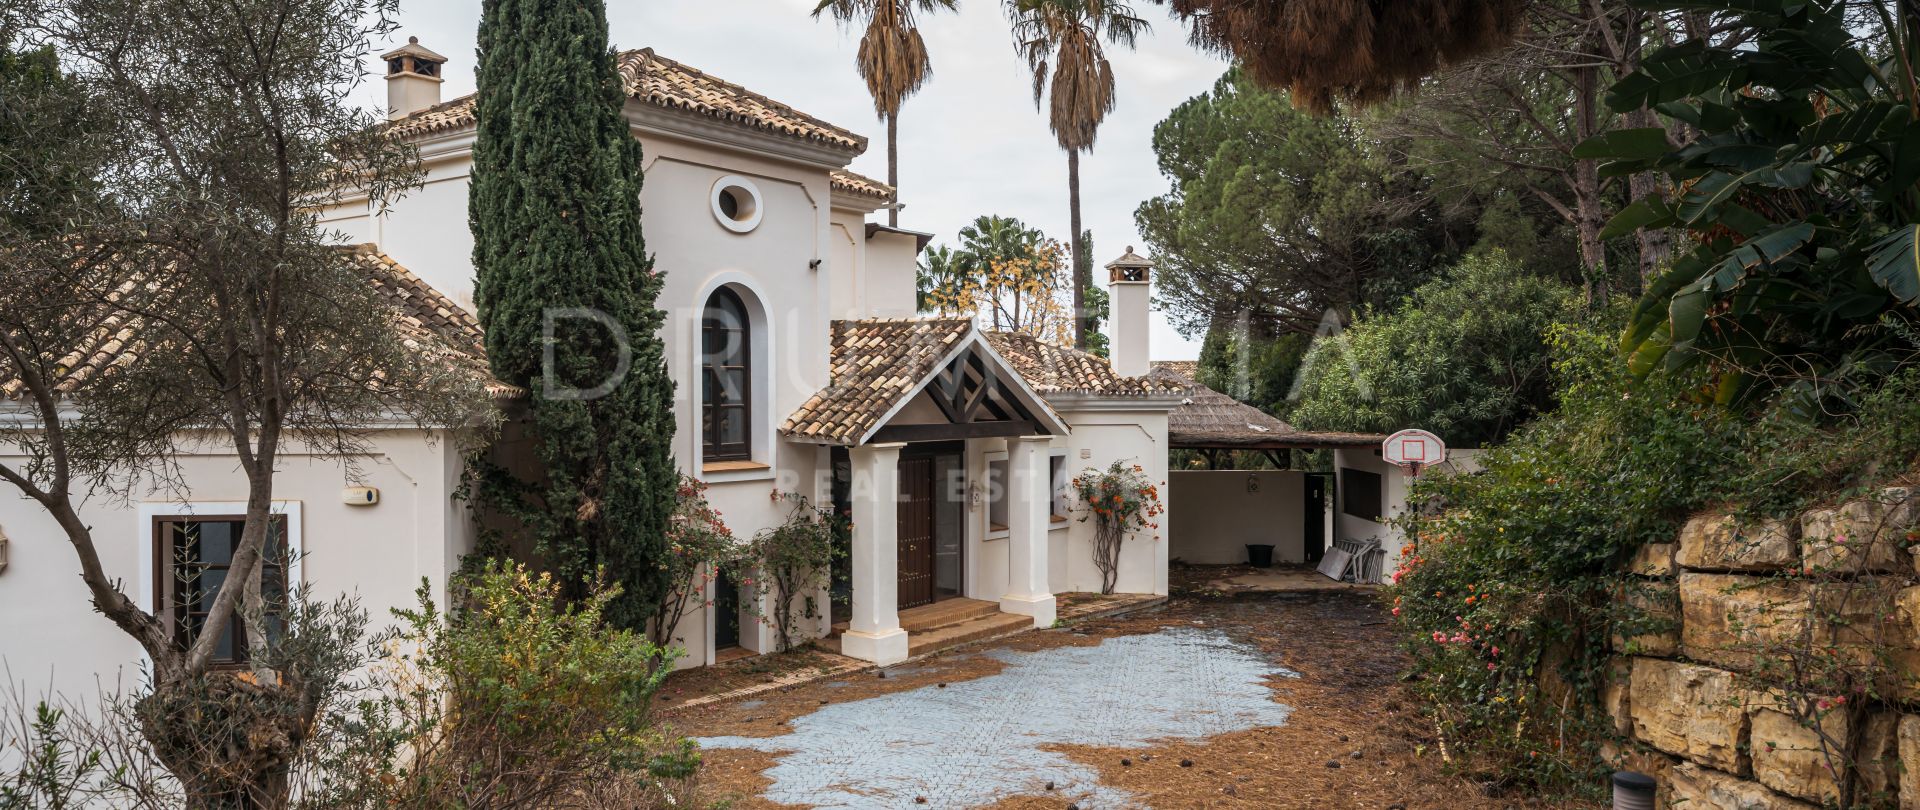 Charmig andalusisk villa med utsikt över havet och bergen för renoveringsprojekt, La Zagaleta, Benahavis